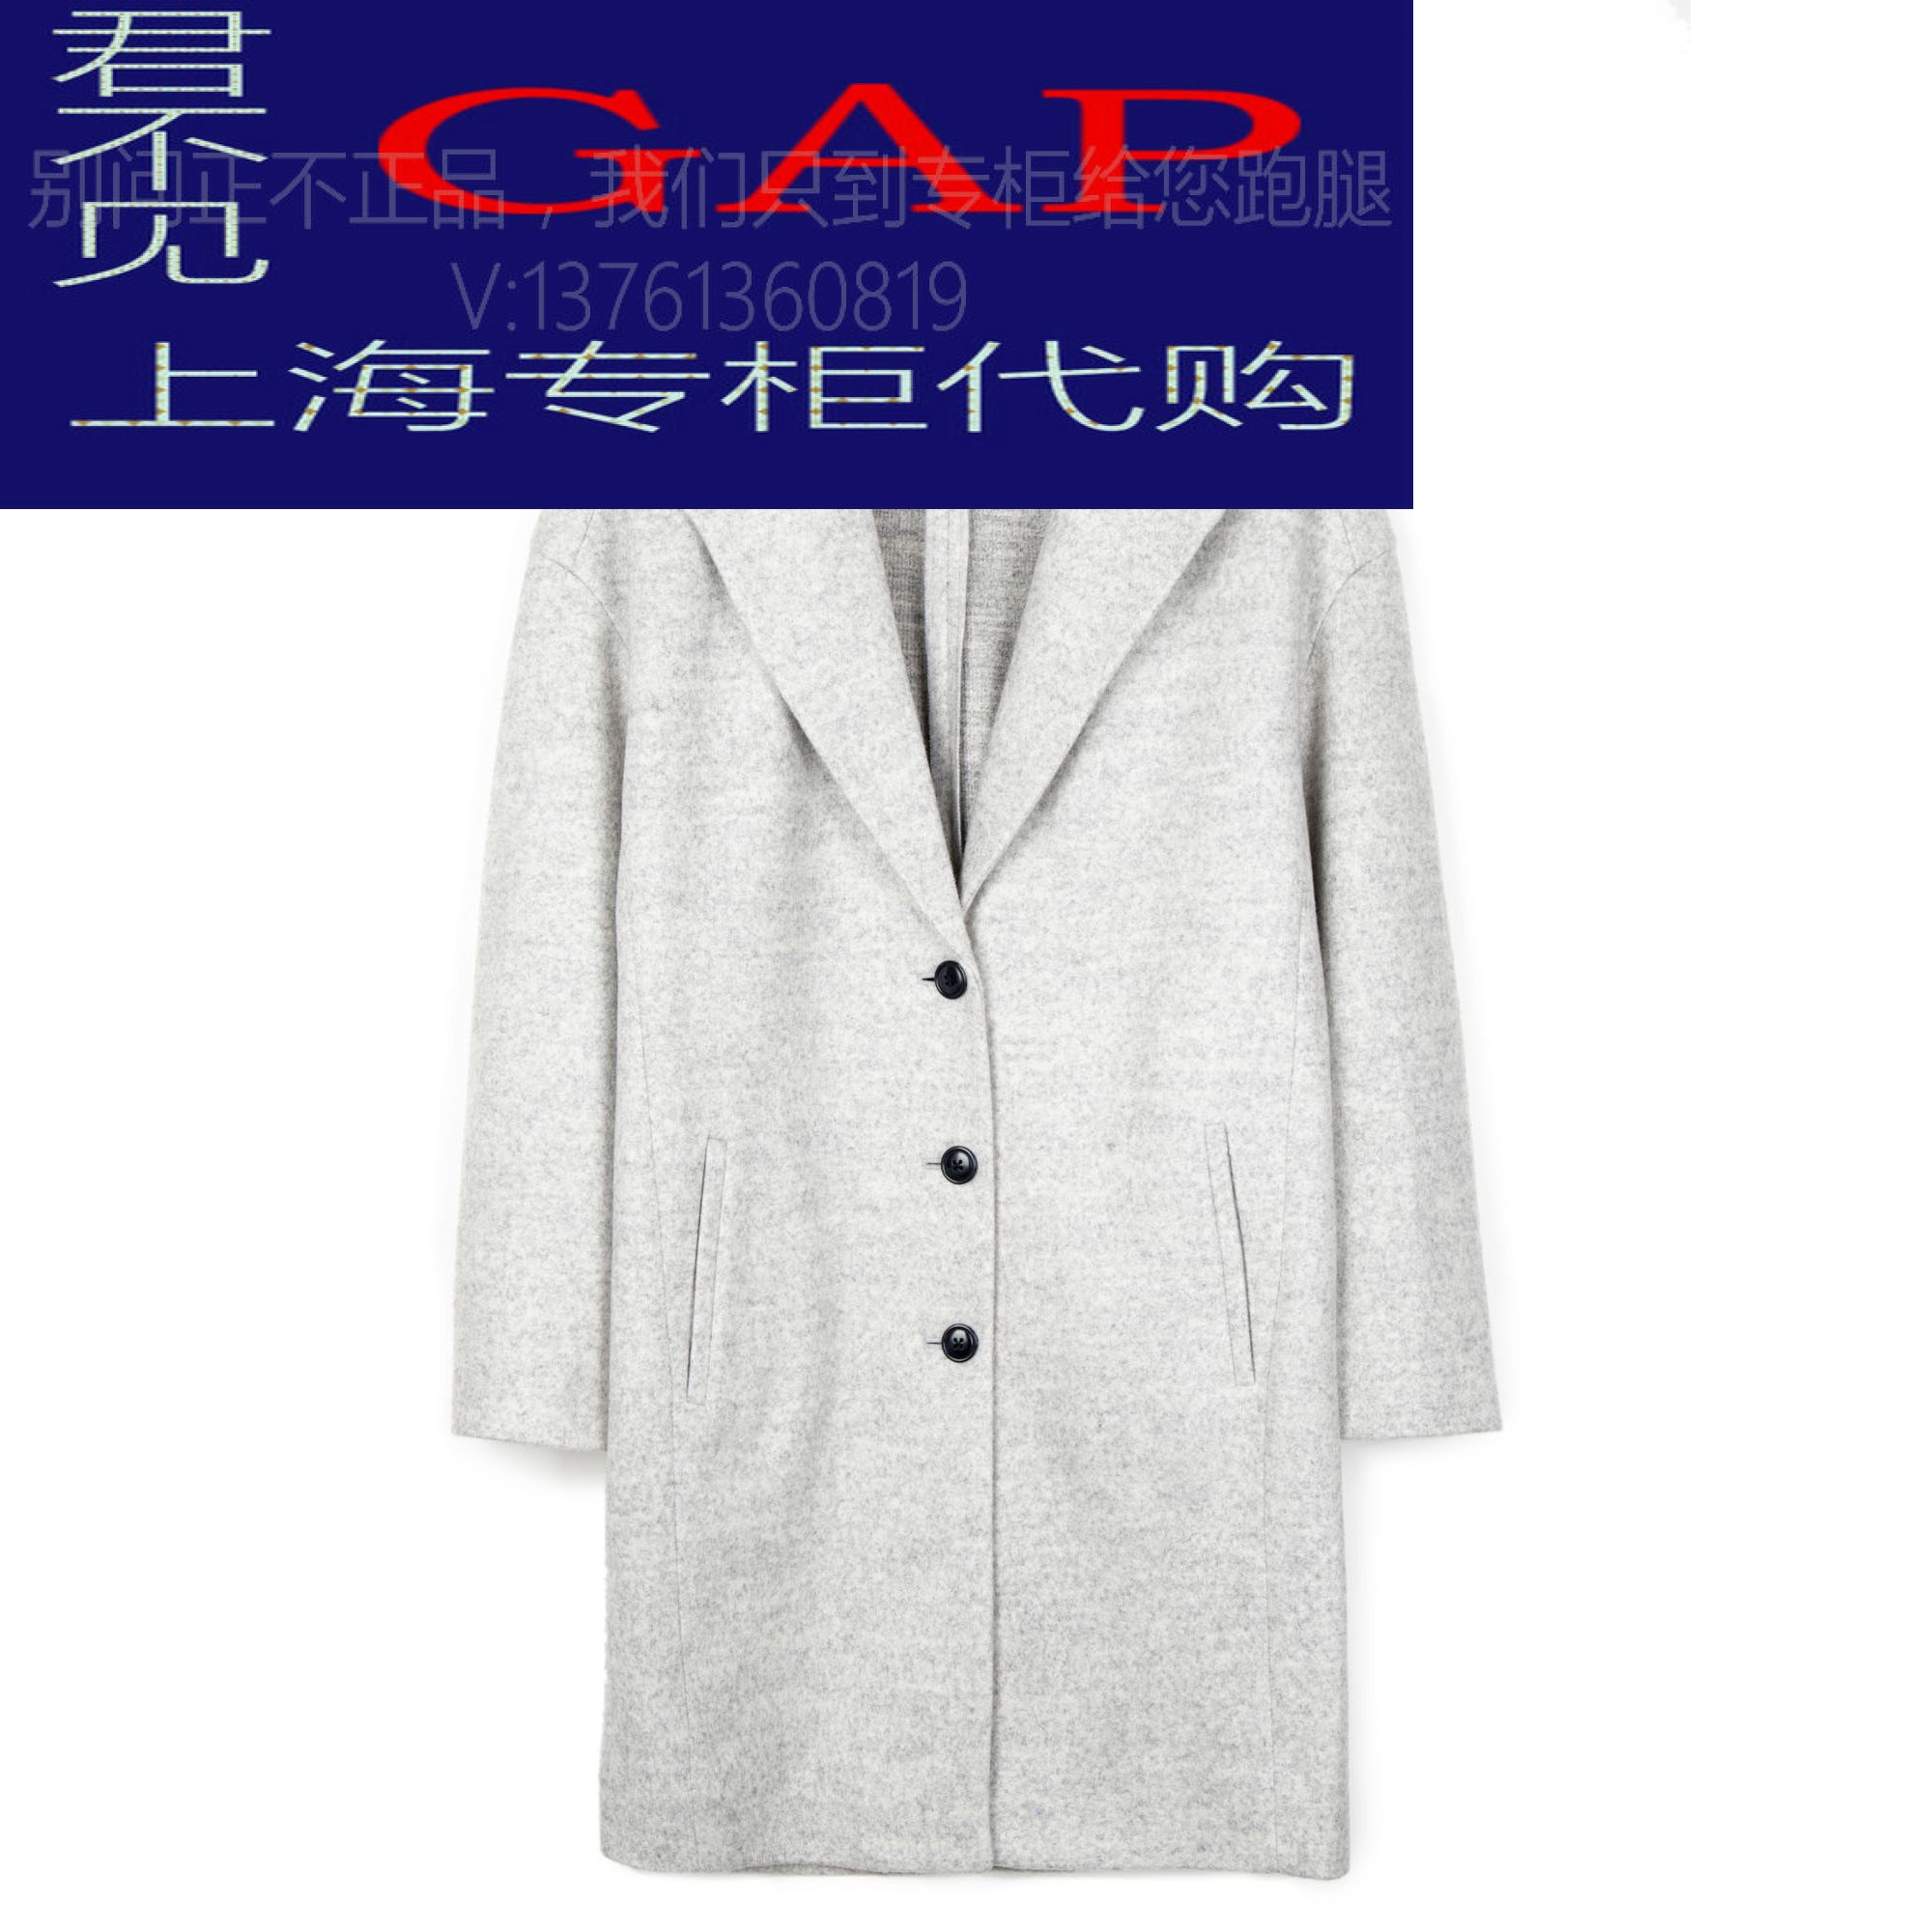 Gap正品代购女装 茧型毛呢大衣460746